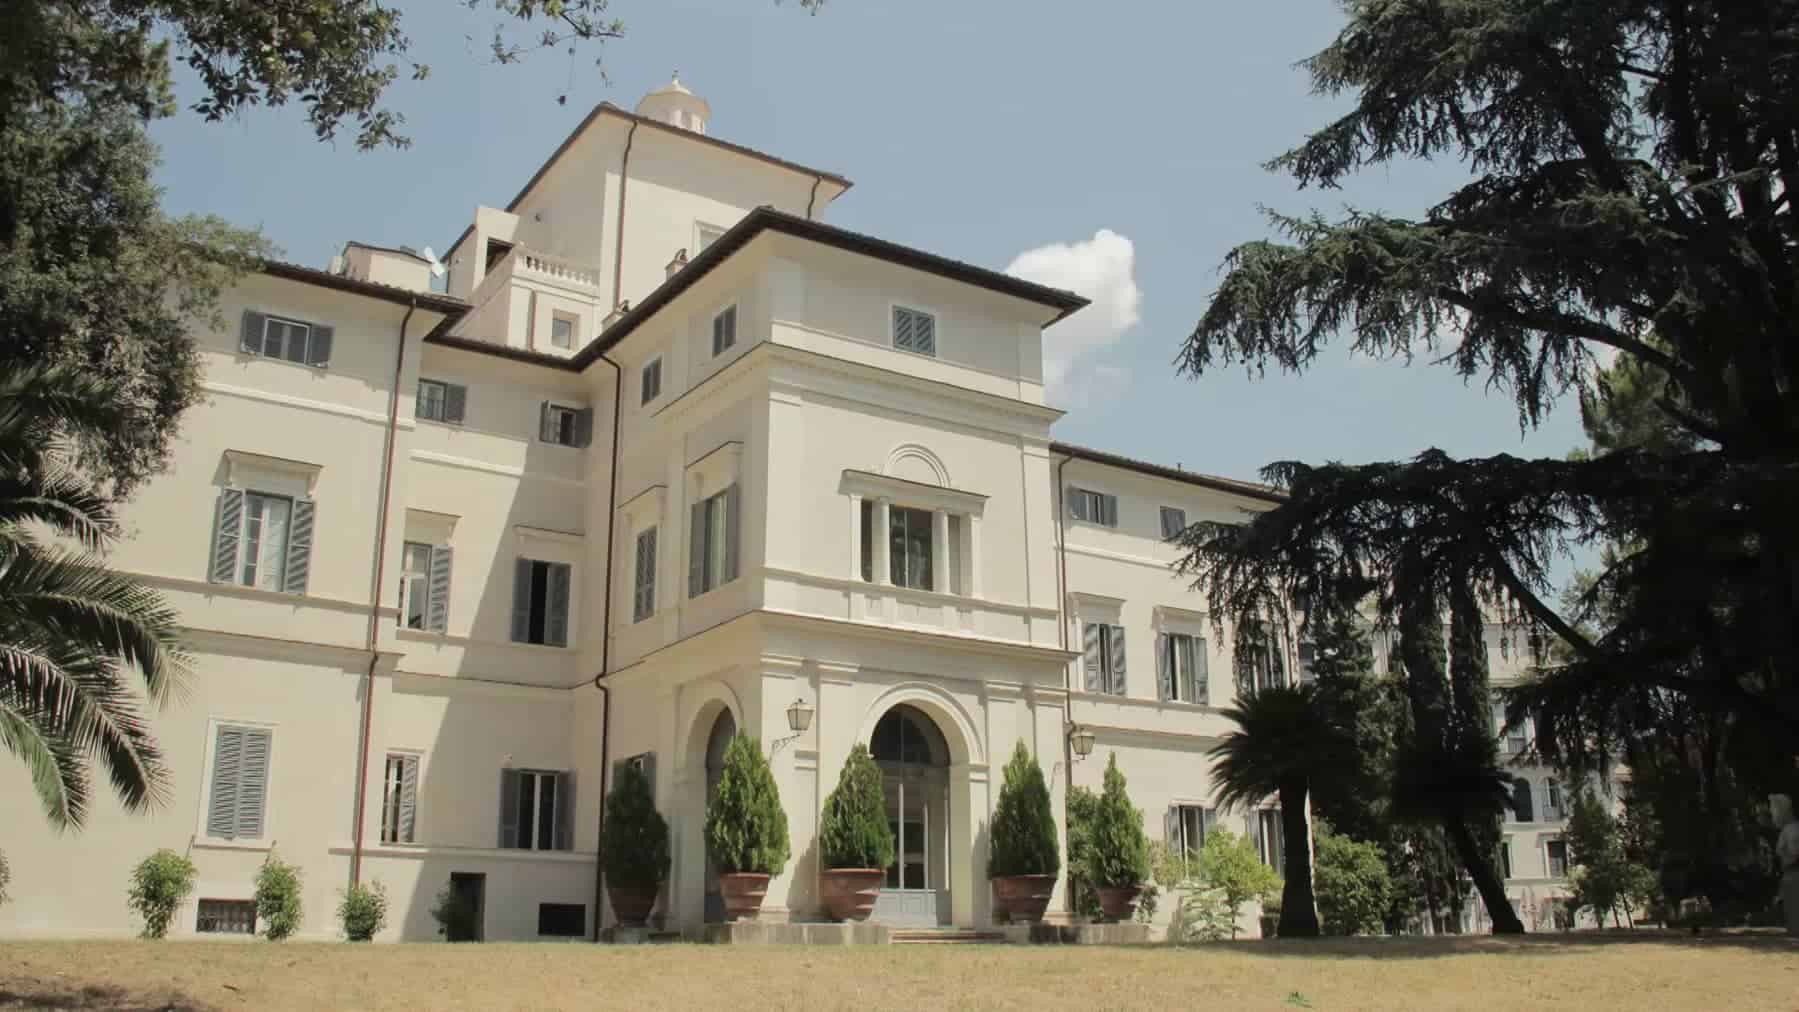 Villa Aurora in Rome, Italy